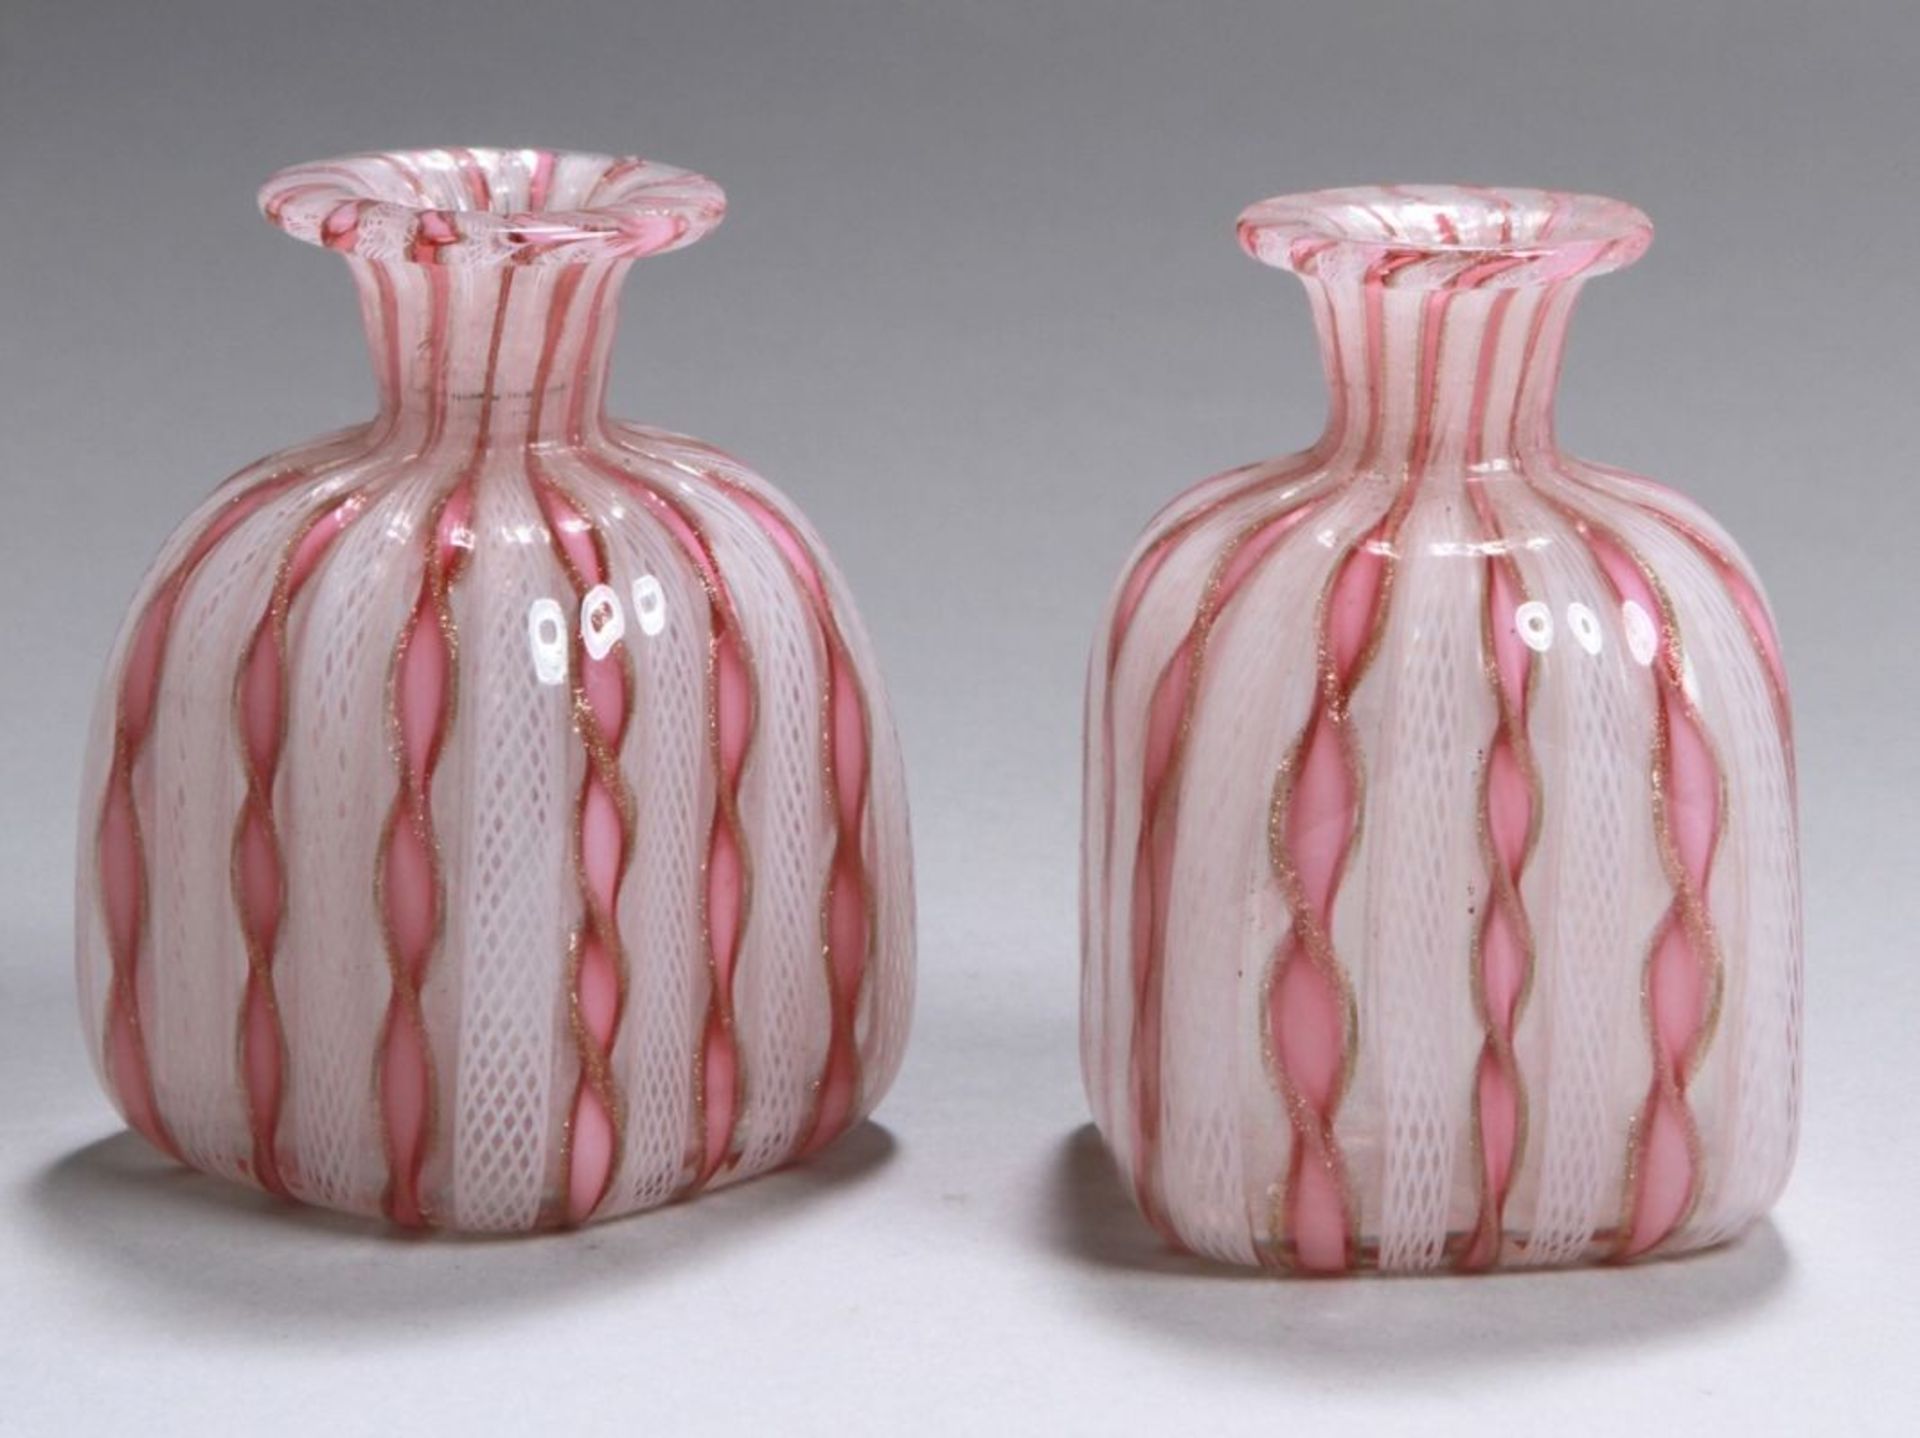 Ein Paar Glas-Zierväschen, "Zanfirico", Murano, Mitte 20. Jh., gefertigt aus